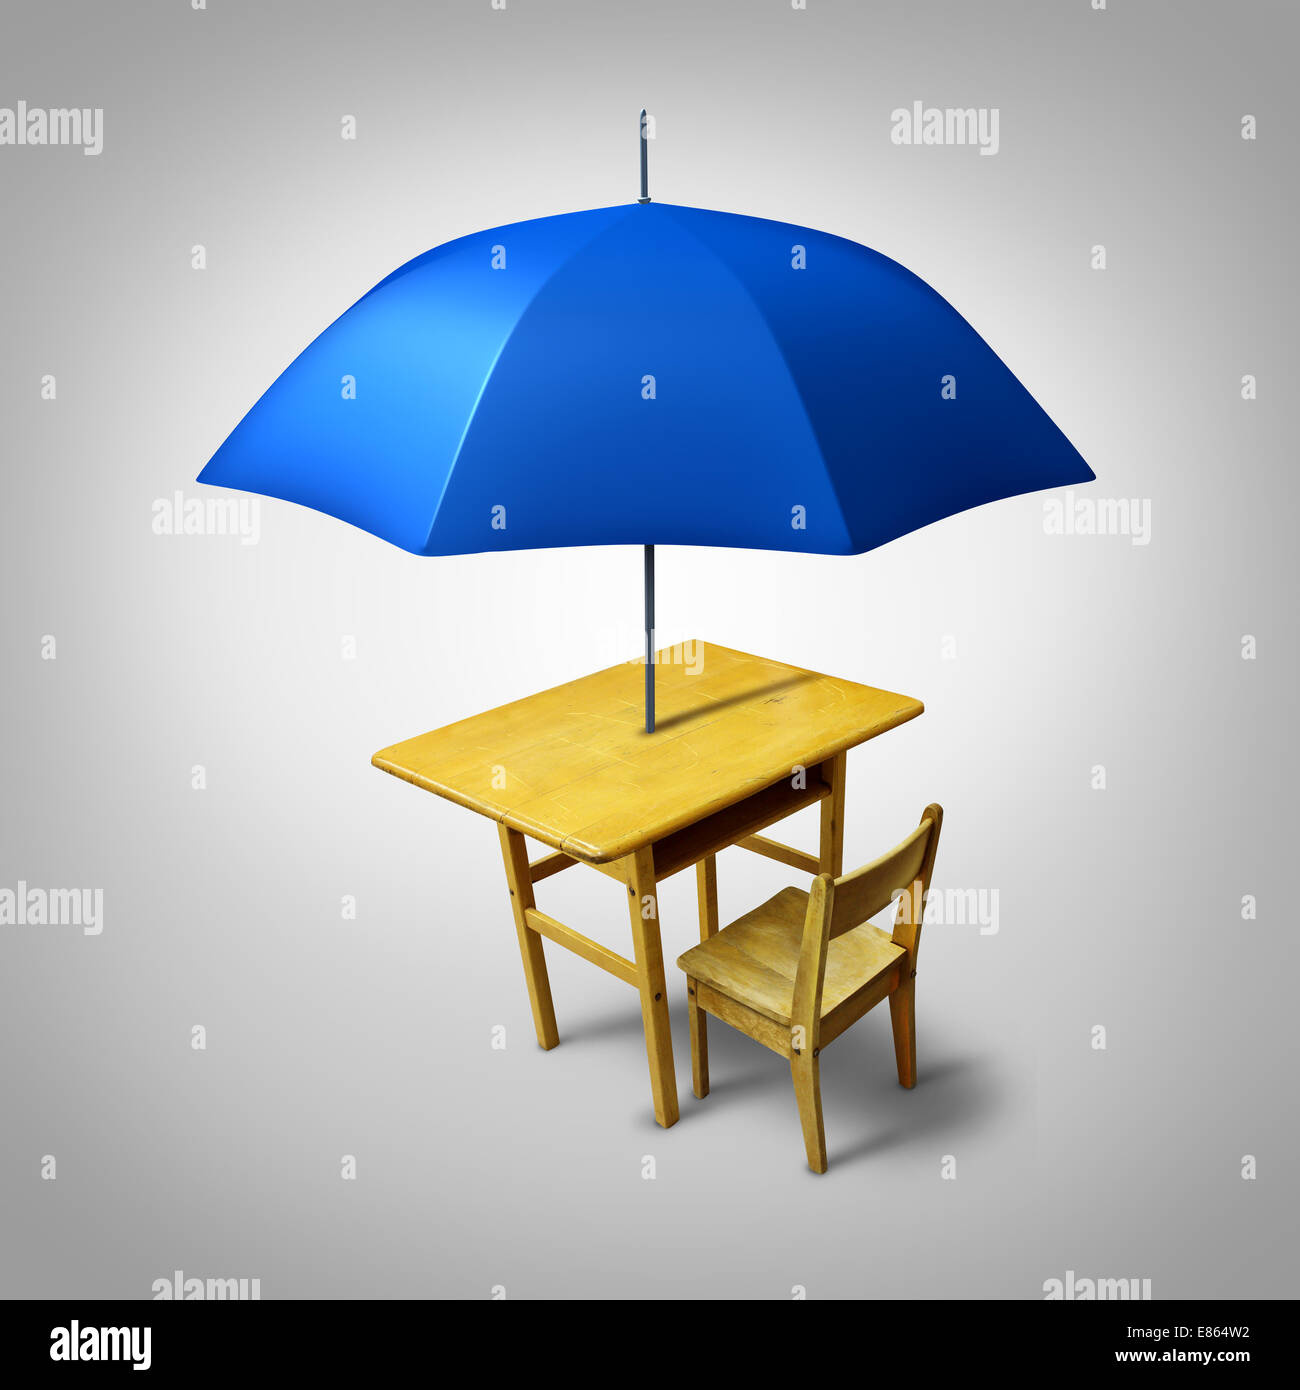 Ausbildung Schutz und Unterschlupf für Alphabetisierung Lehren und lernen als eine generische Schulbank mit einem Regenschirm als Symbol für Schutz und Sicherheit für Studenten. Stockfoto